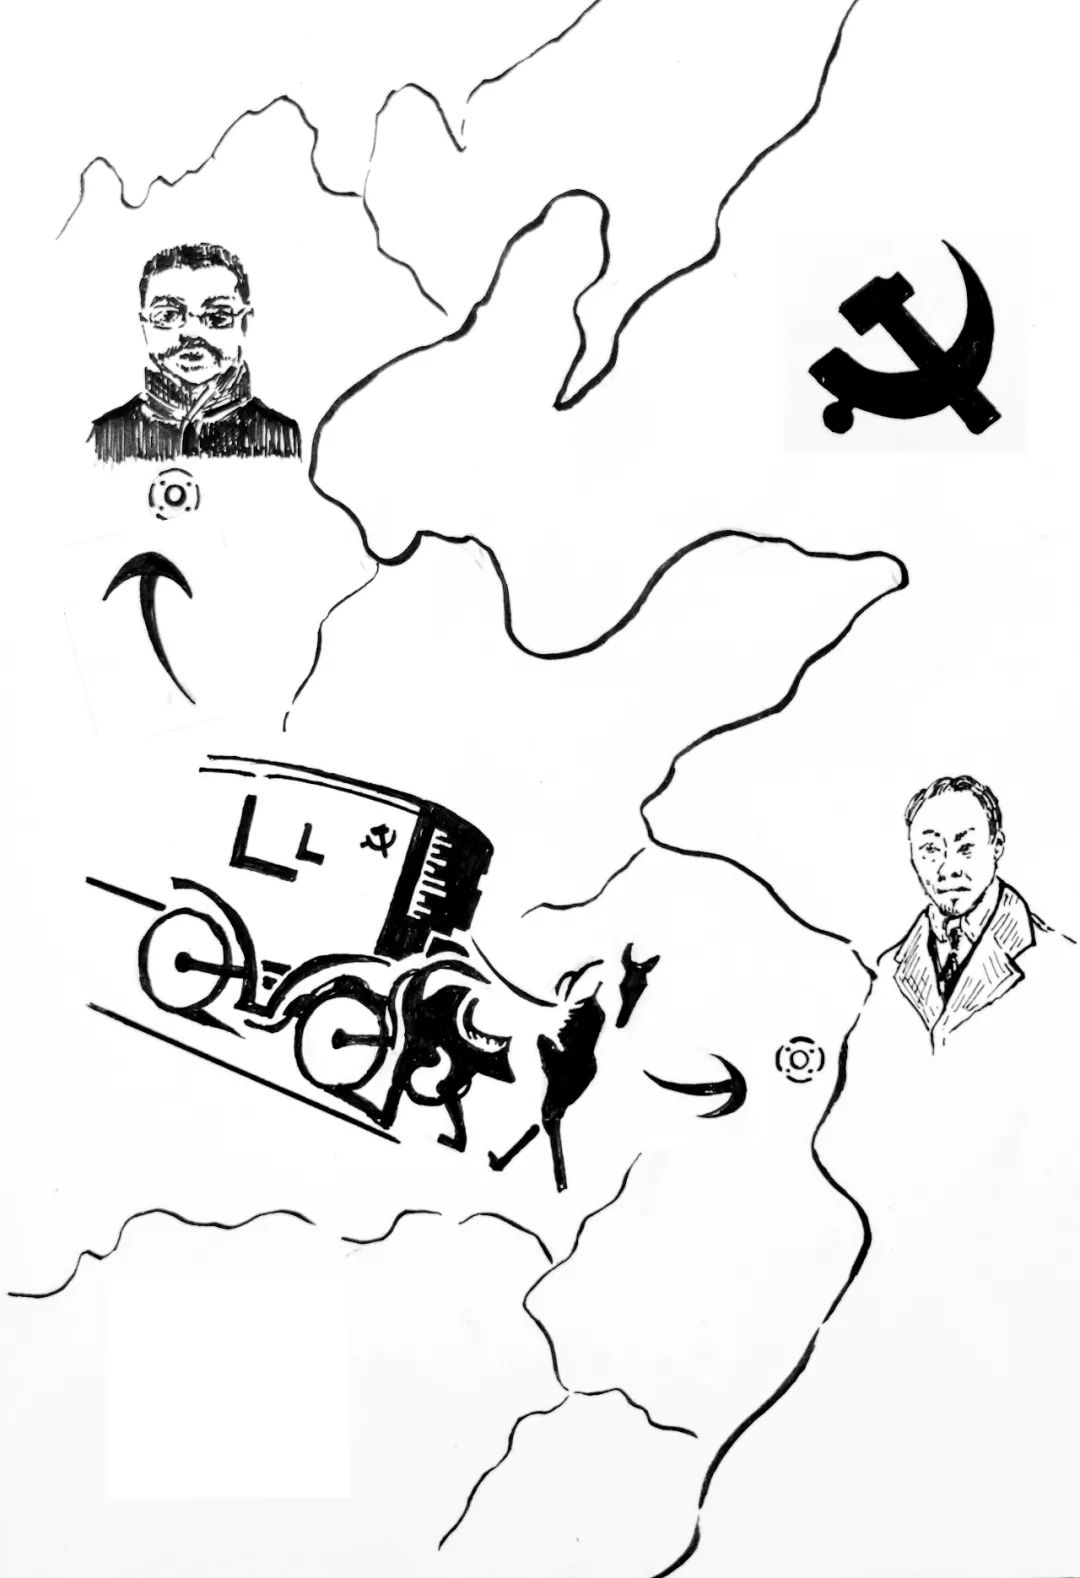 着迷于中国共产党的历史 利用自己专业特长 将党史故事画成钢笔画 和